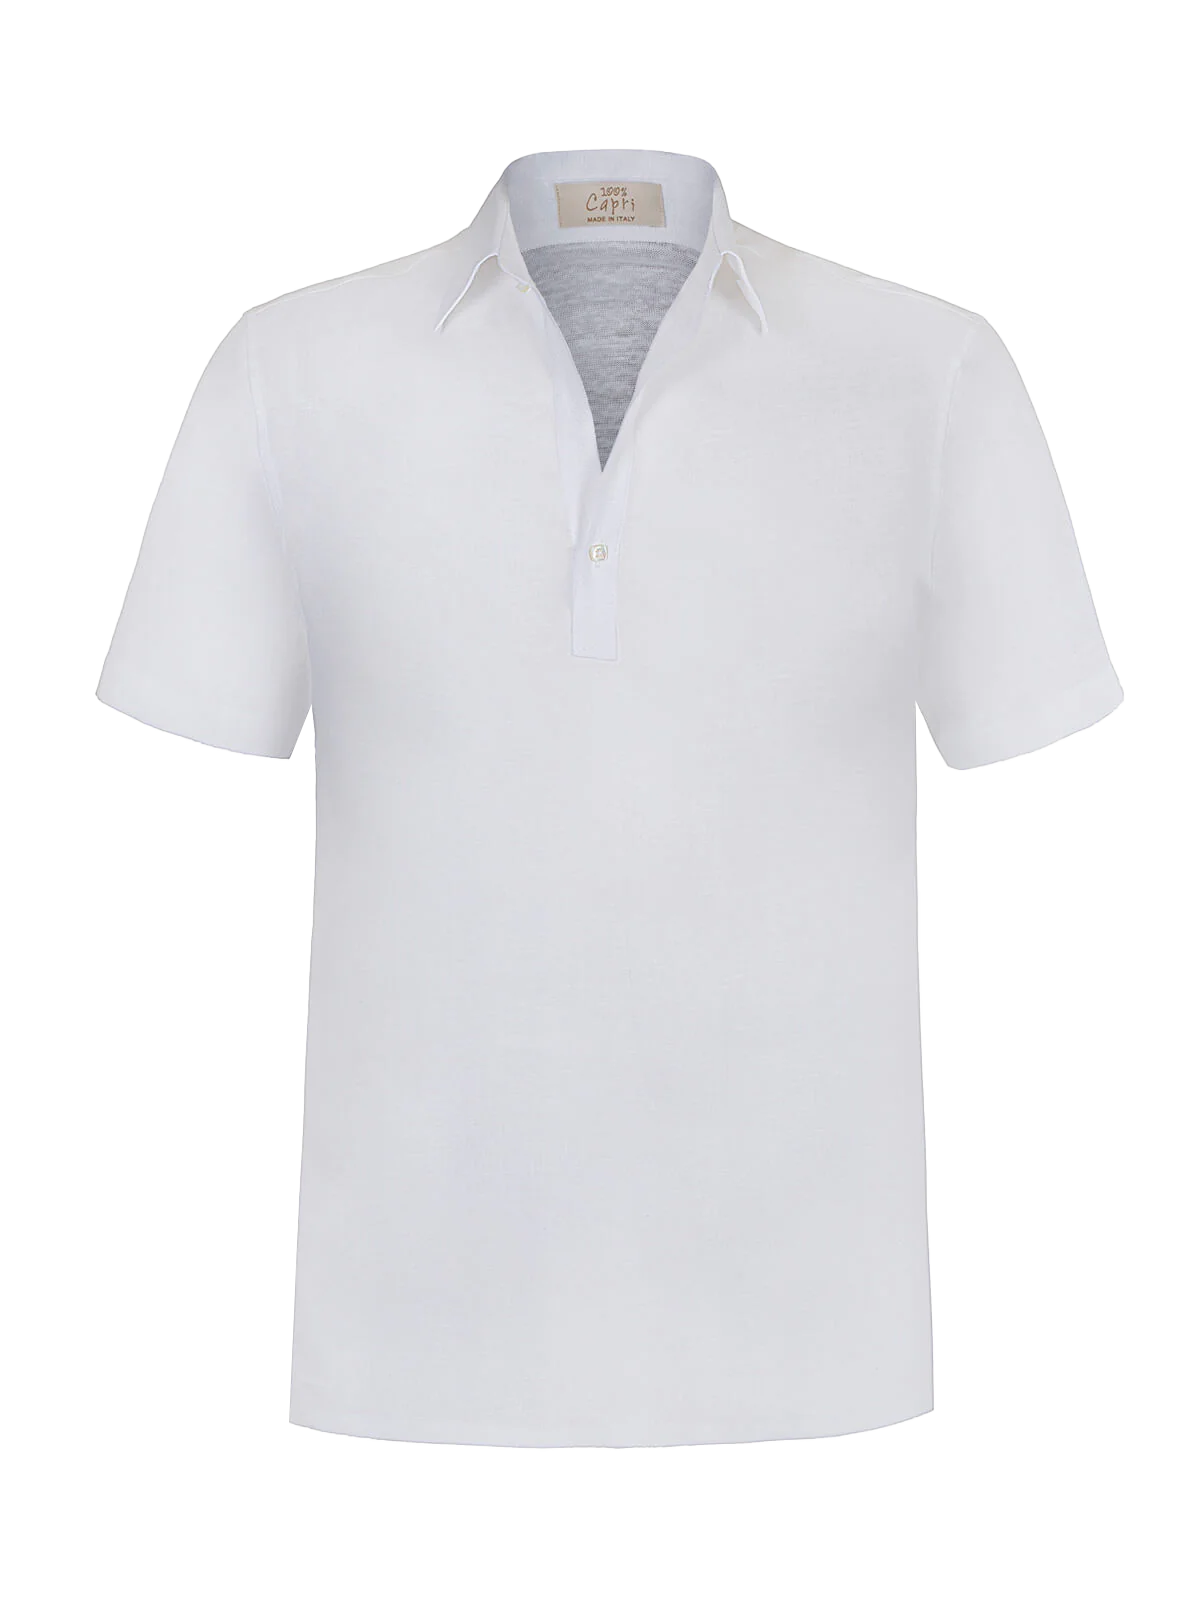 Camicia Portofino for man 100% Capri linen white t-shirt front